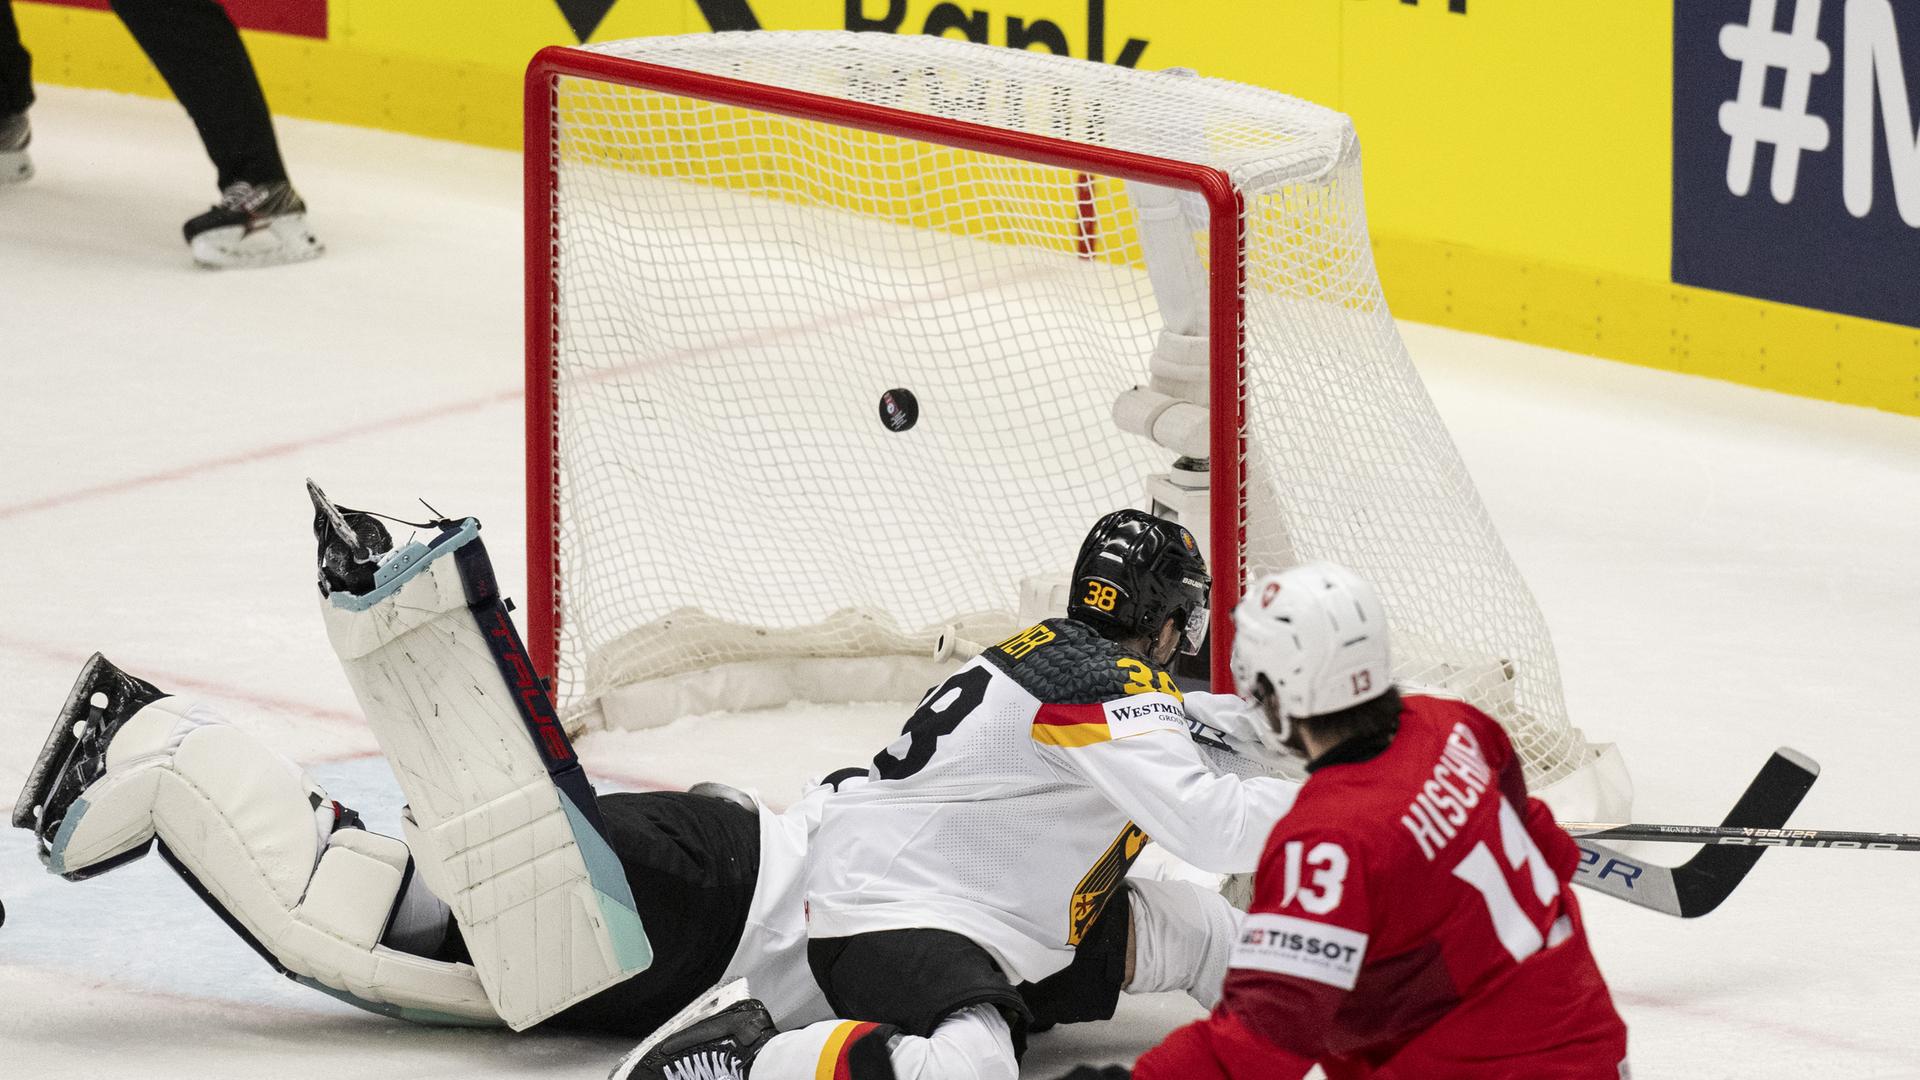 Eine Spielszene von der Eishockey-Partei Schweiz gegen Deutschland. Der Schweizer Spieler Nico Hischier, rechts im Bild, trifft den Puck ins Tor.